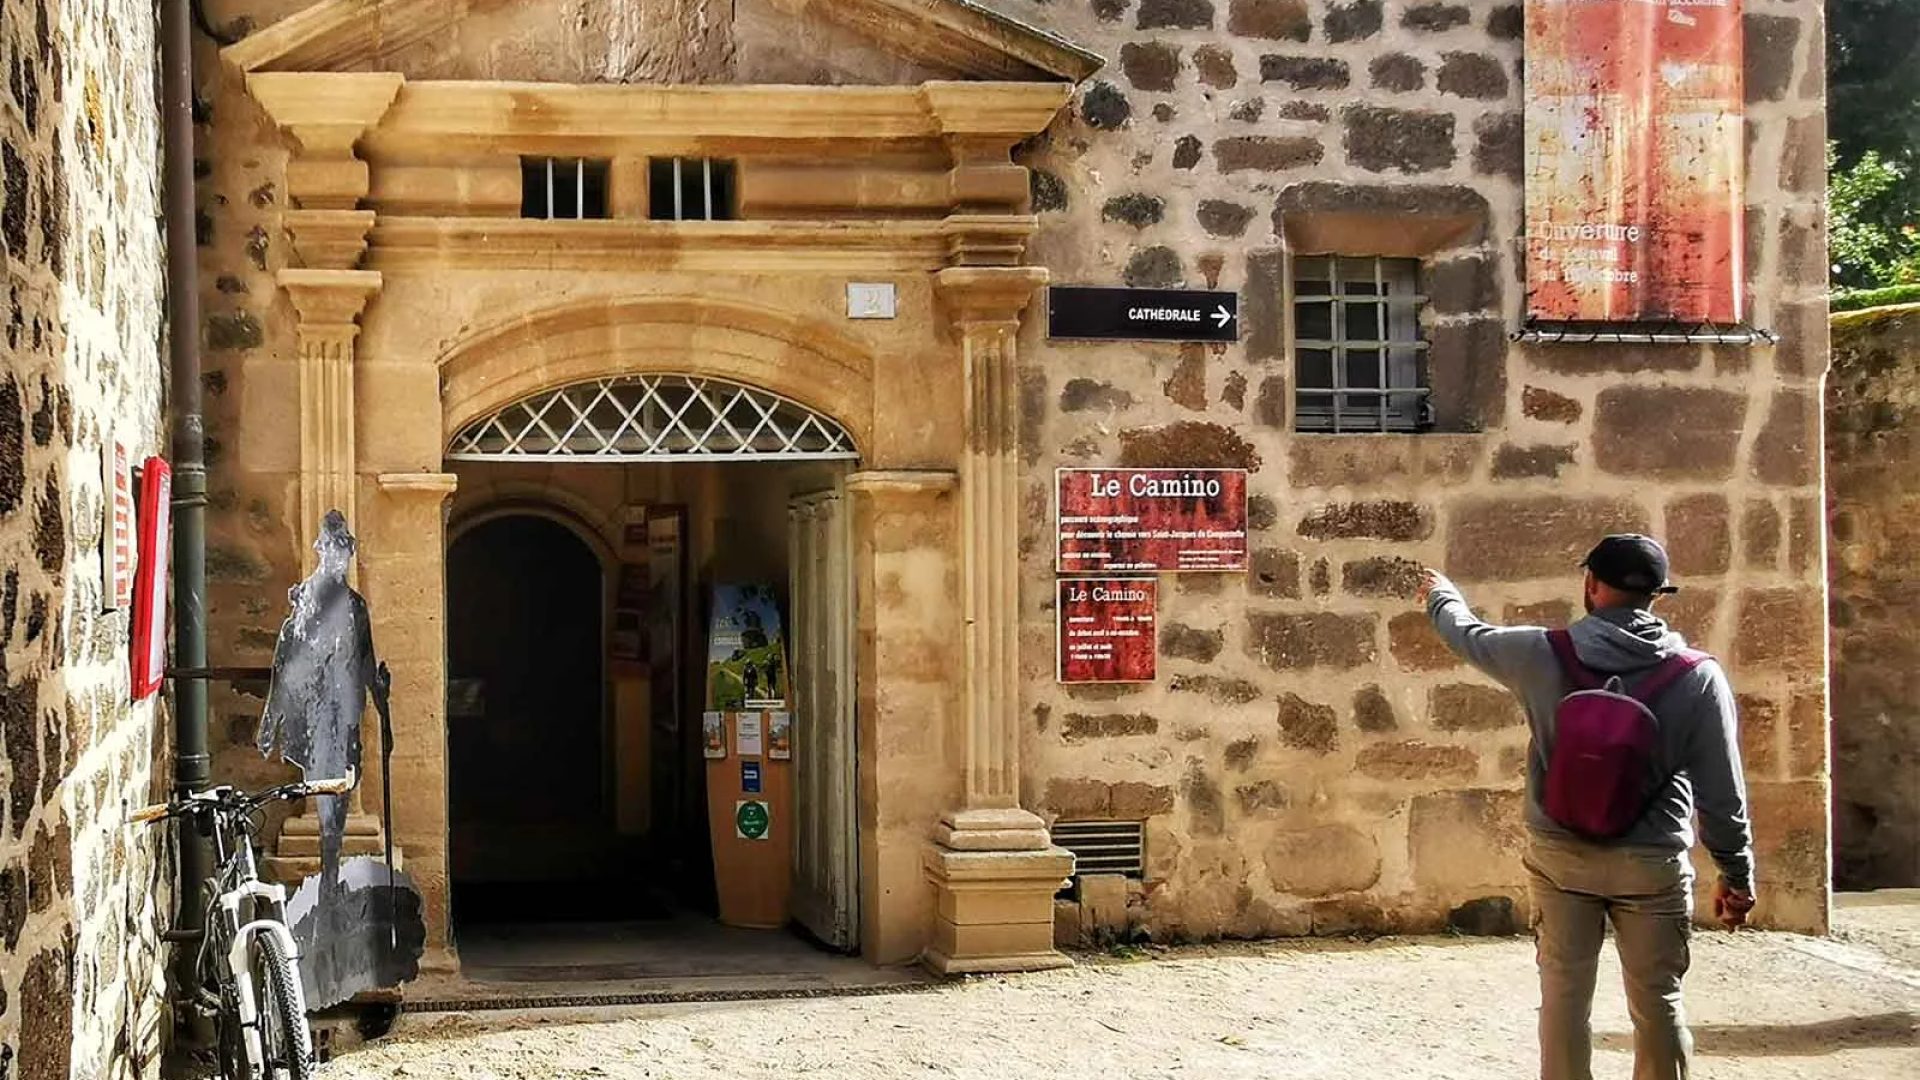 Entrance to the Camino de Saint-Jacques museum in Le Puy-en-Velay in Haute-Loire, Auvergne